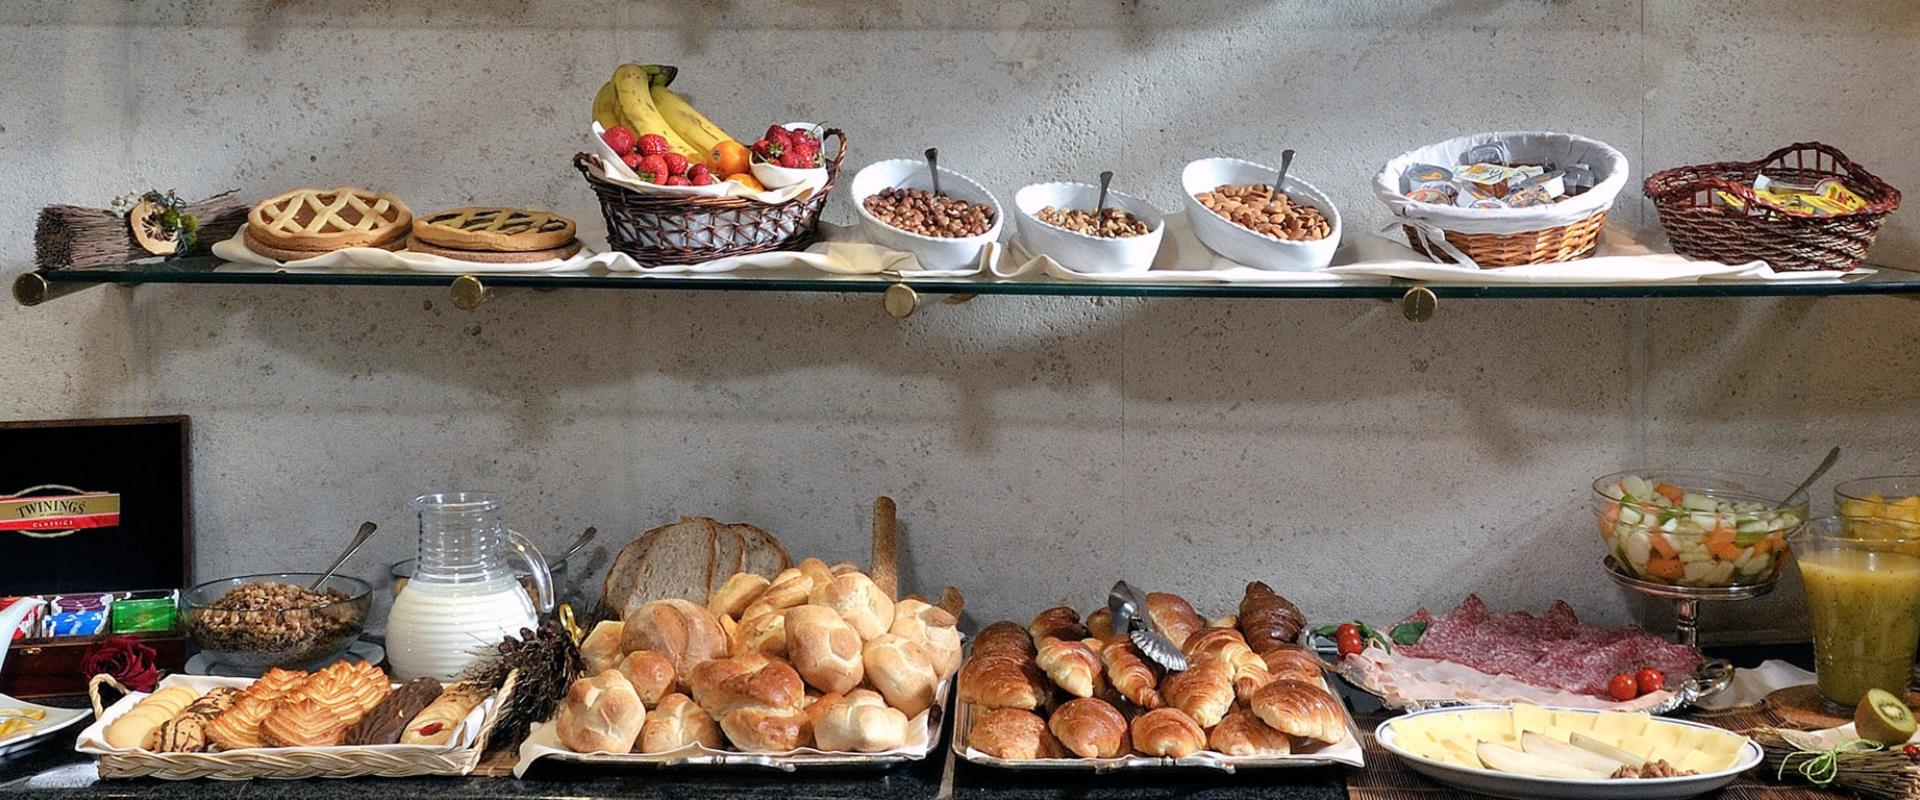 Entdecken Sie das reichhaltige Frühstück im Hotel Piccadilly!